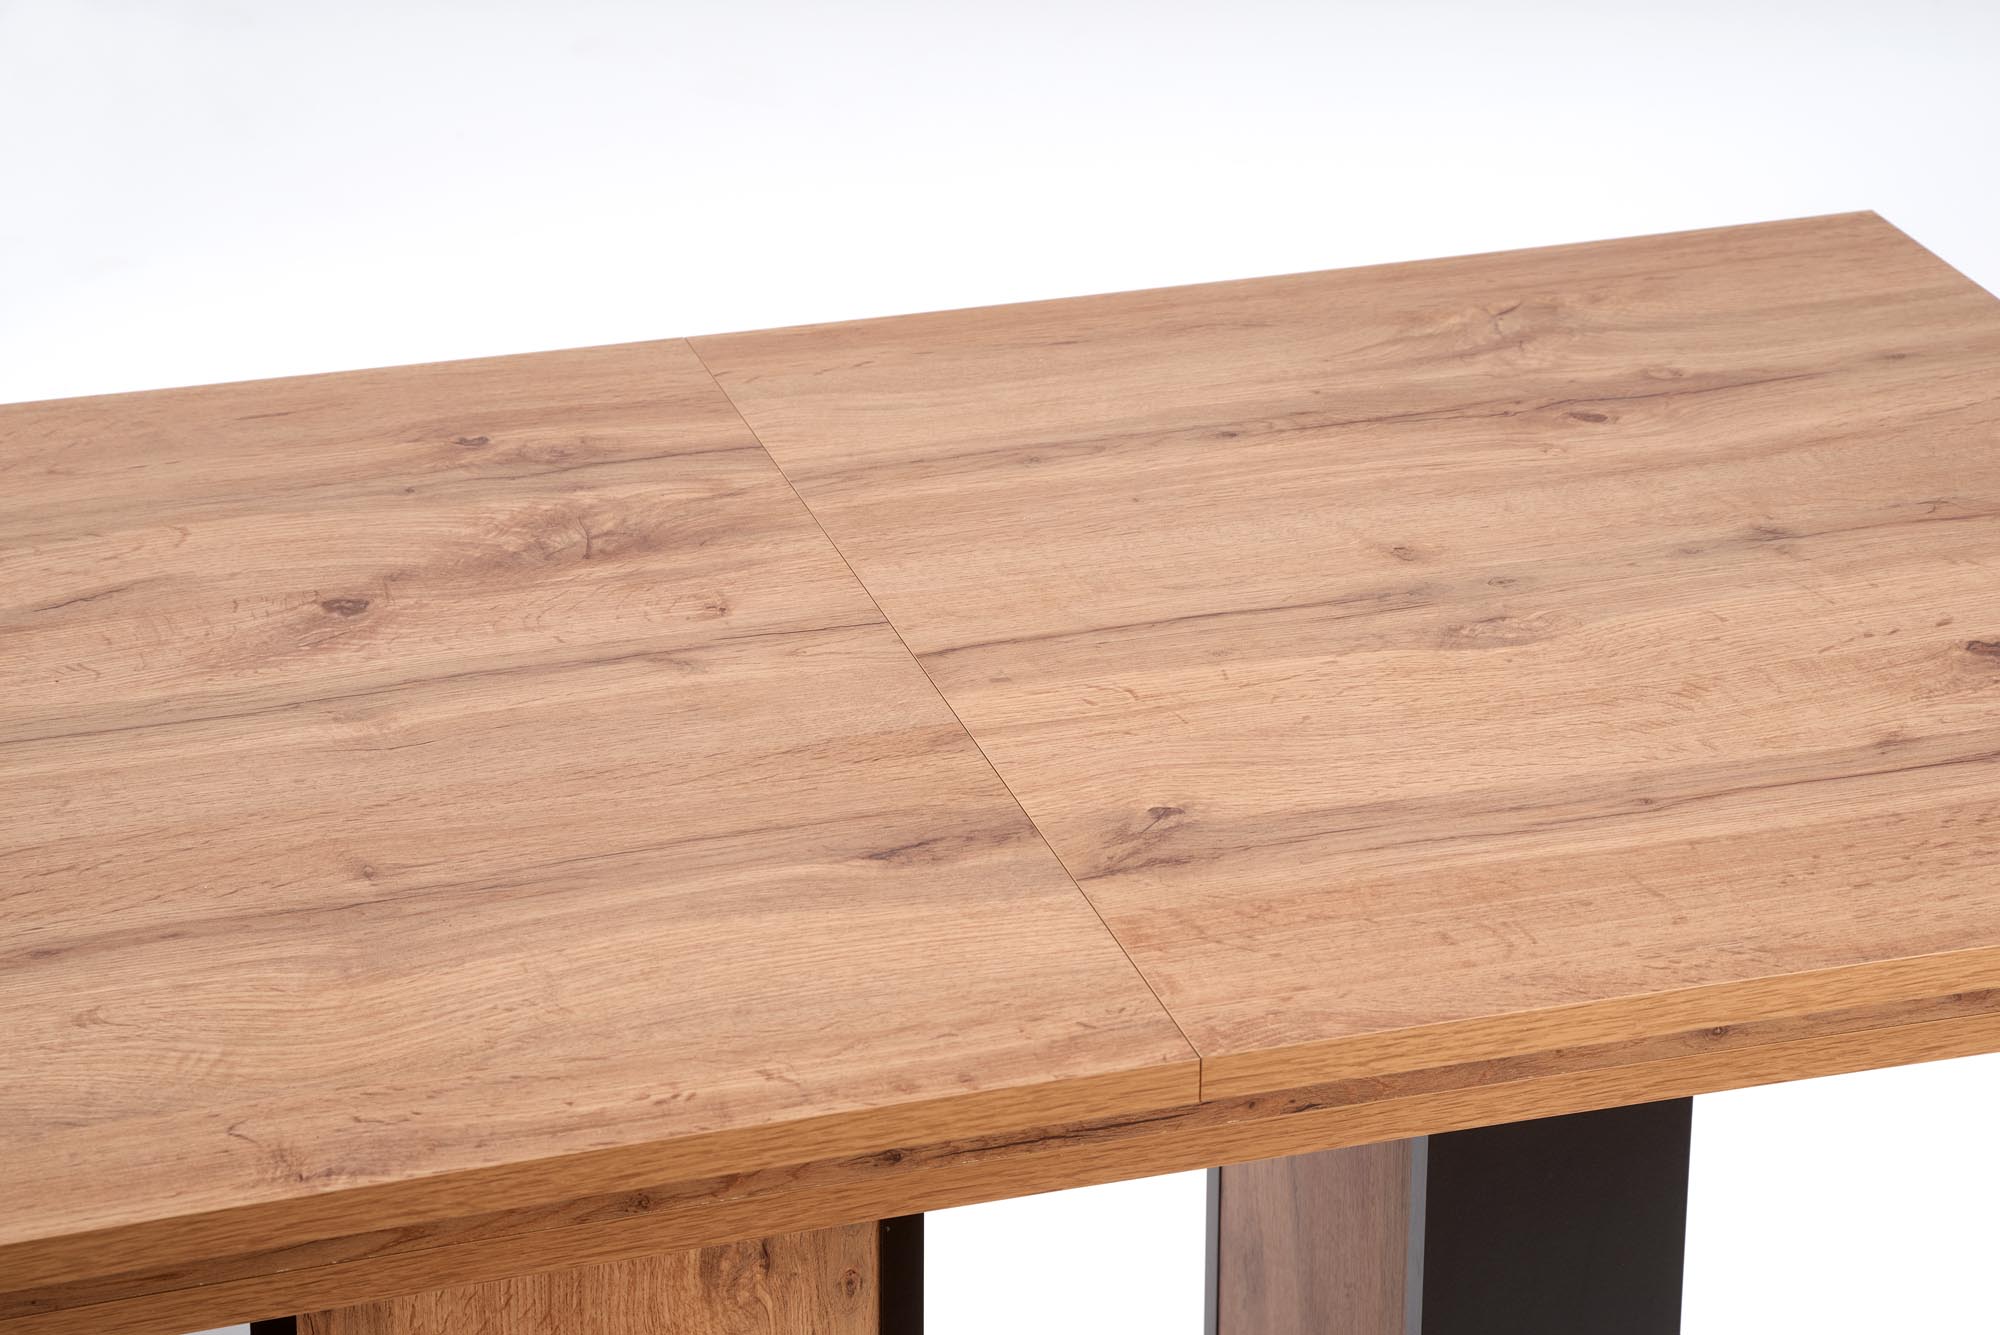 Rozkladací stôl XARELTO 130-175x85 cm - dub wotan / čierna xarelto Stôl rozkladany Dub wotan - Čierny